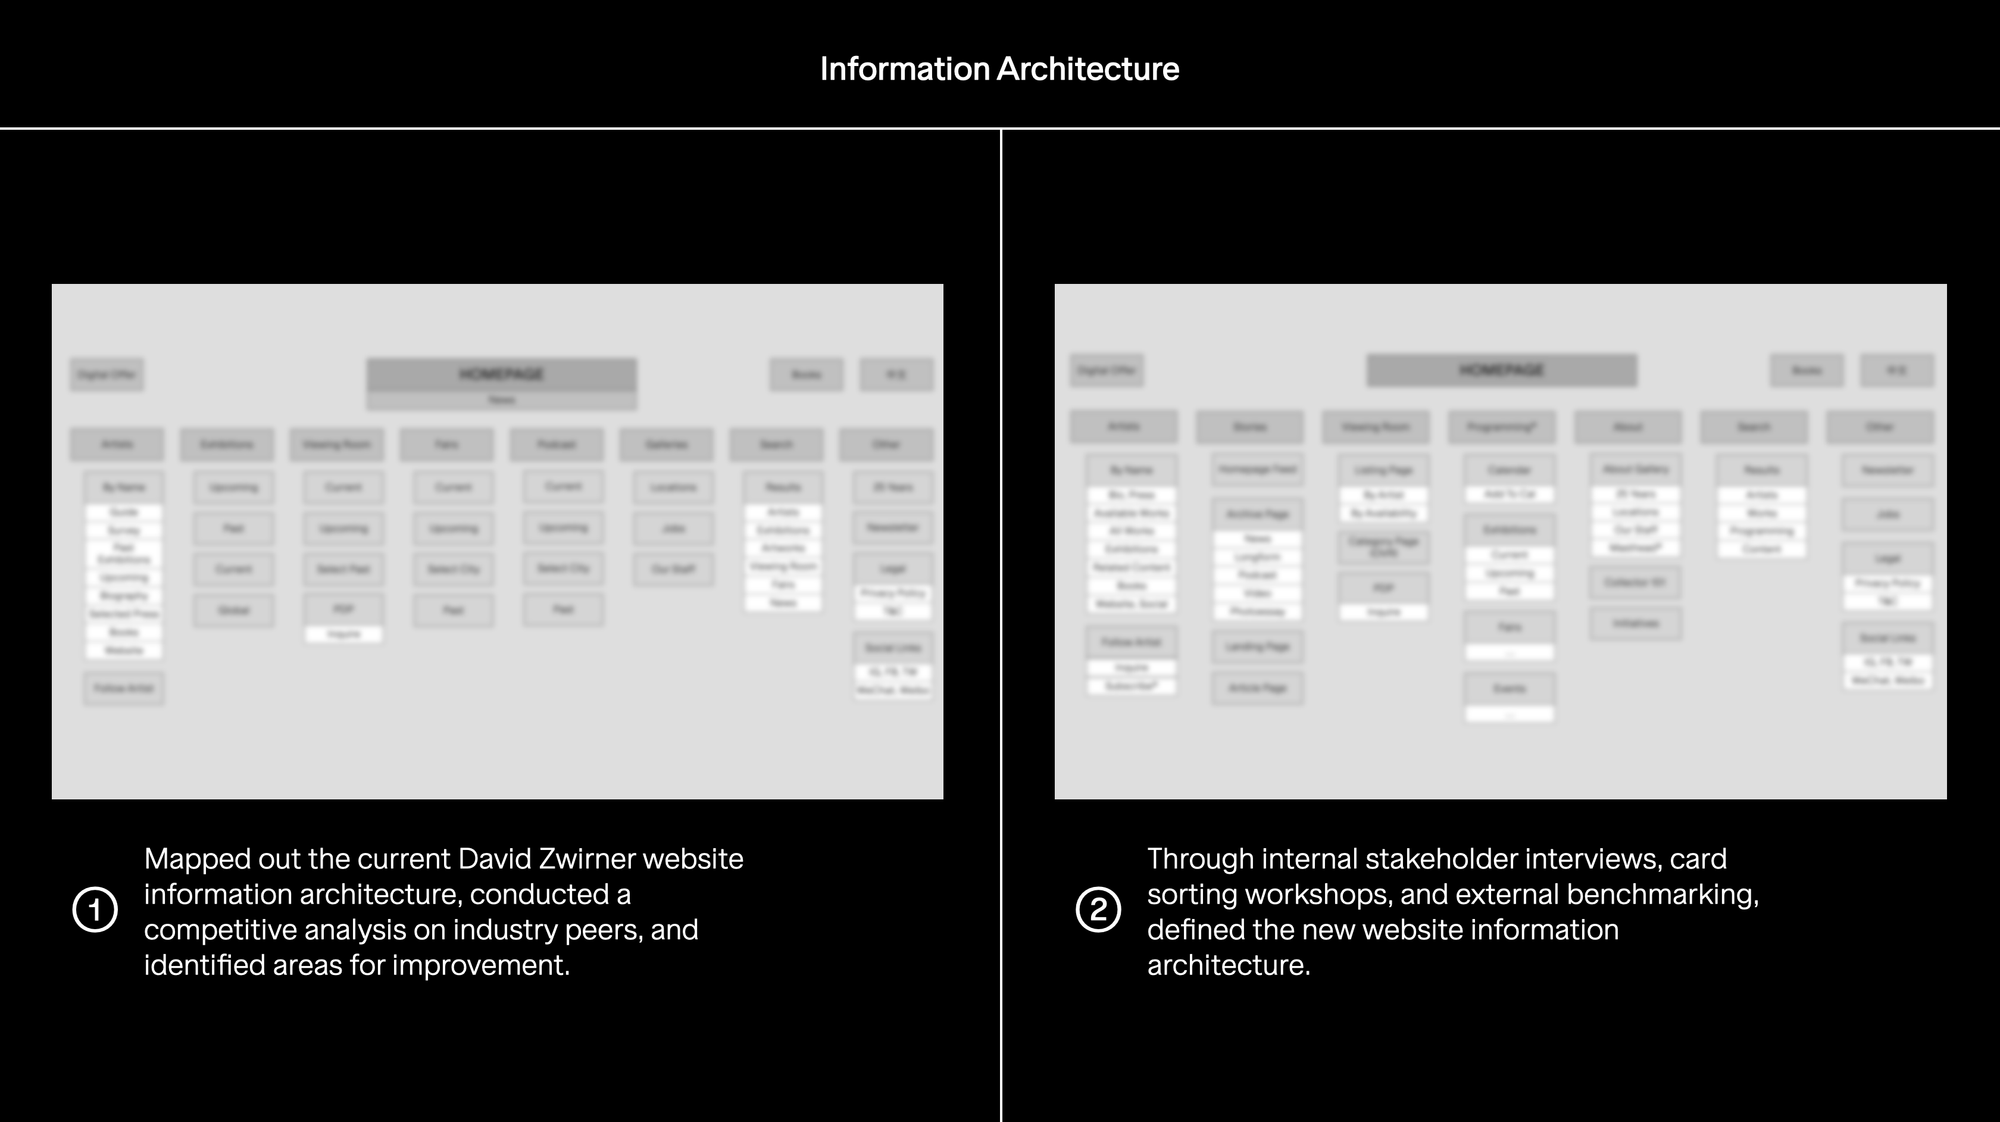 David Zwirner: Information Architecture